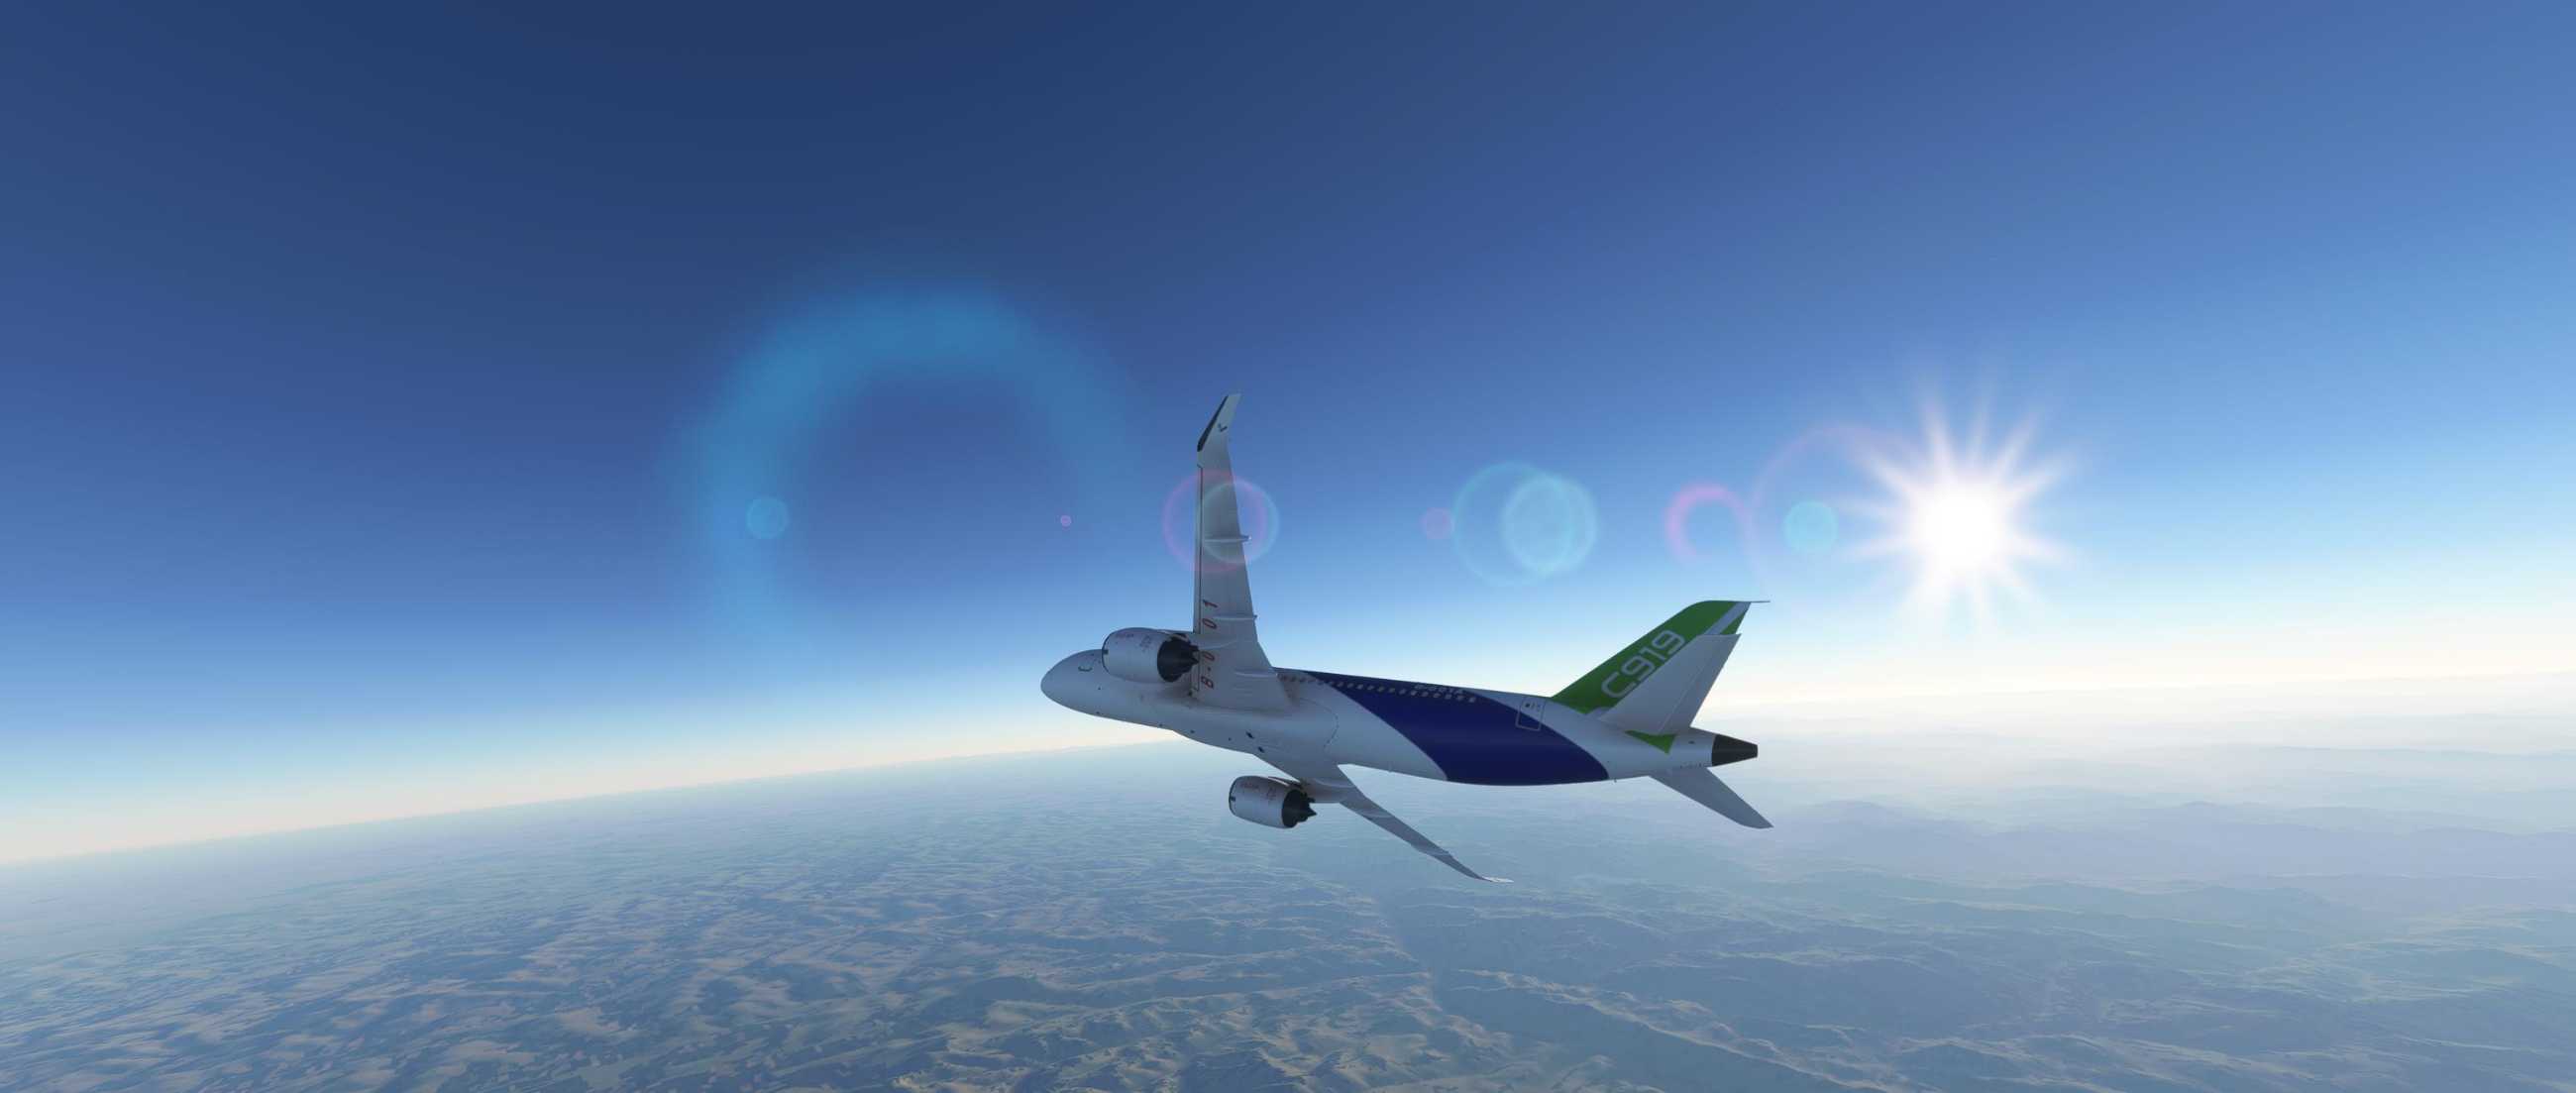 FYCYC-C919 国产大飞机机模 微软模拟飞行演示-653 